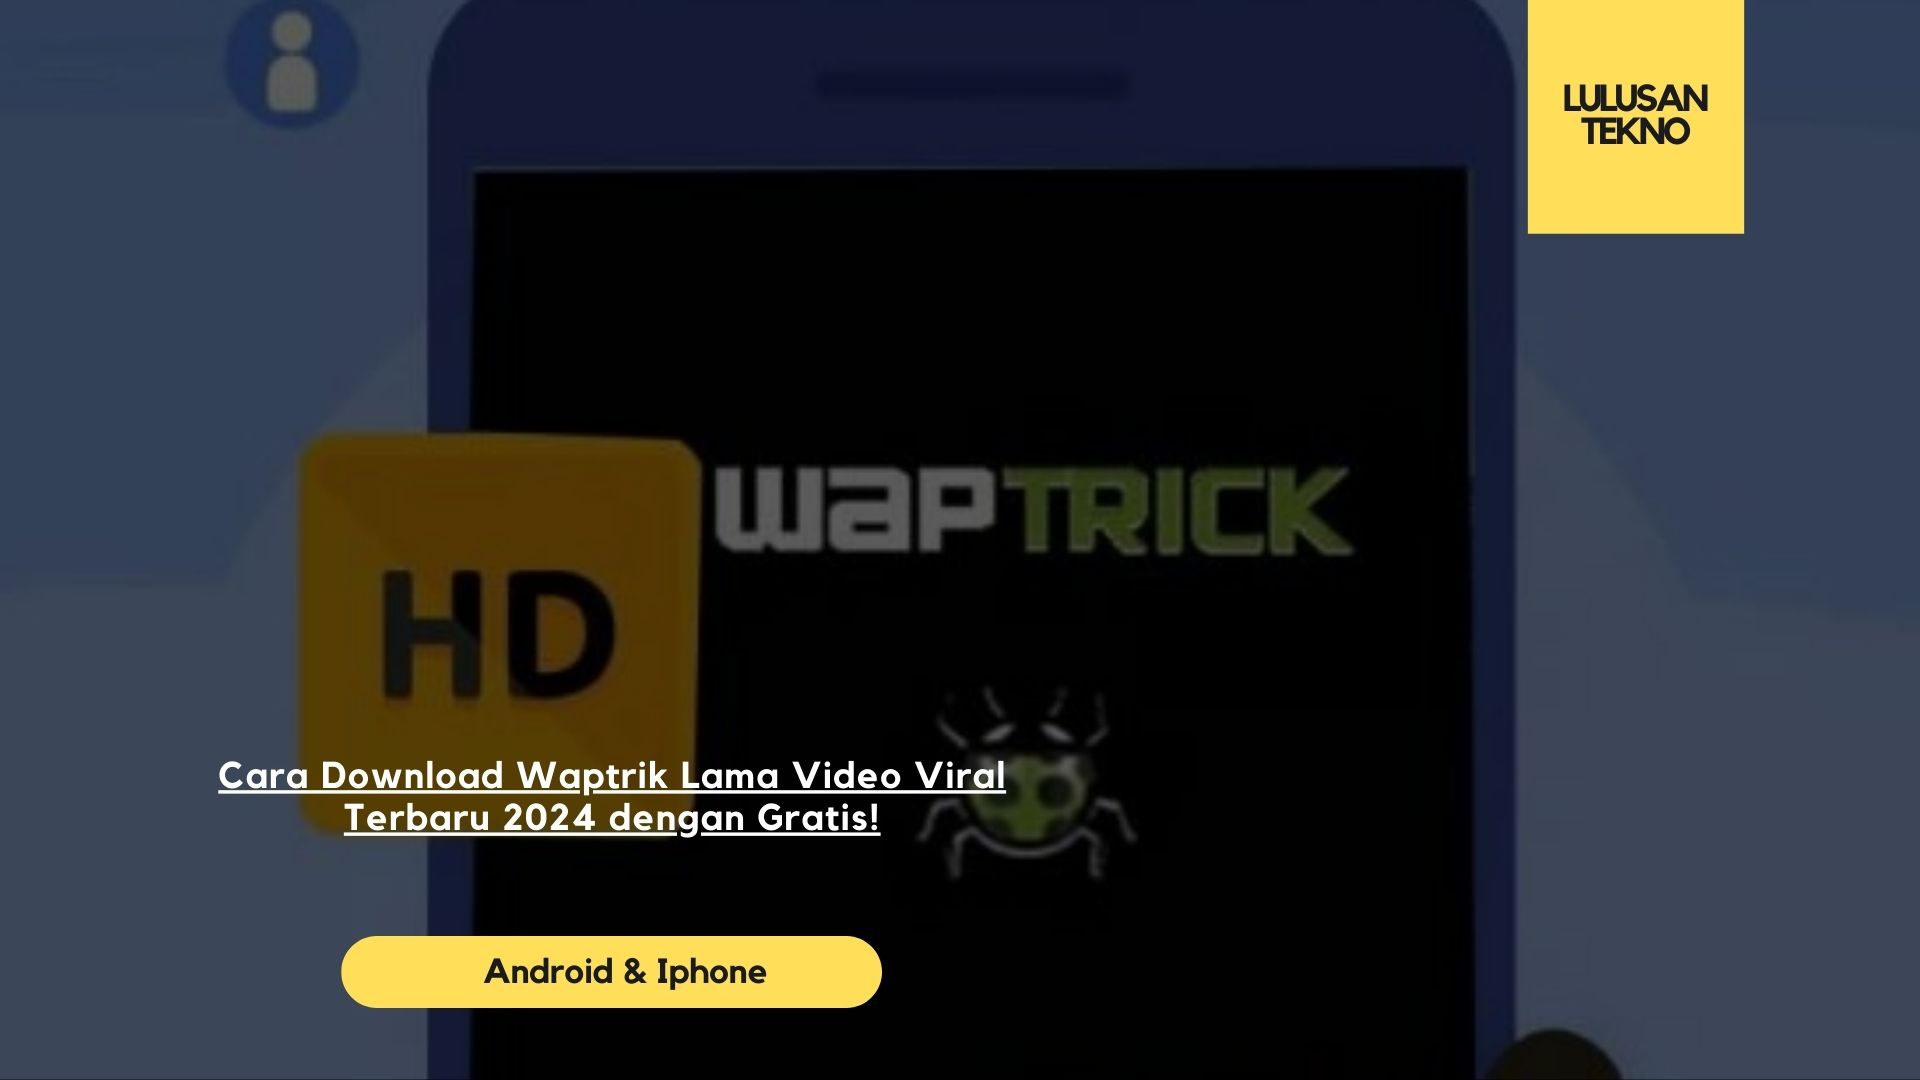 Cara Download Waptrik Lama Video Viral Terbaru 2024 dengan Gratis!